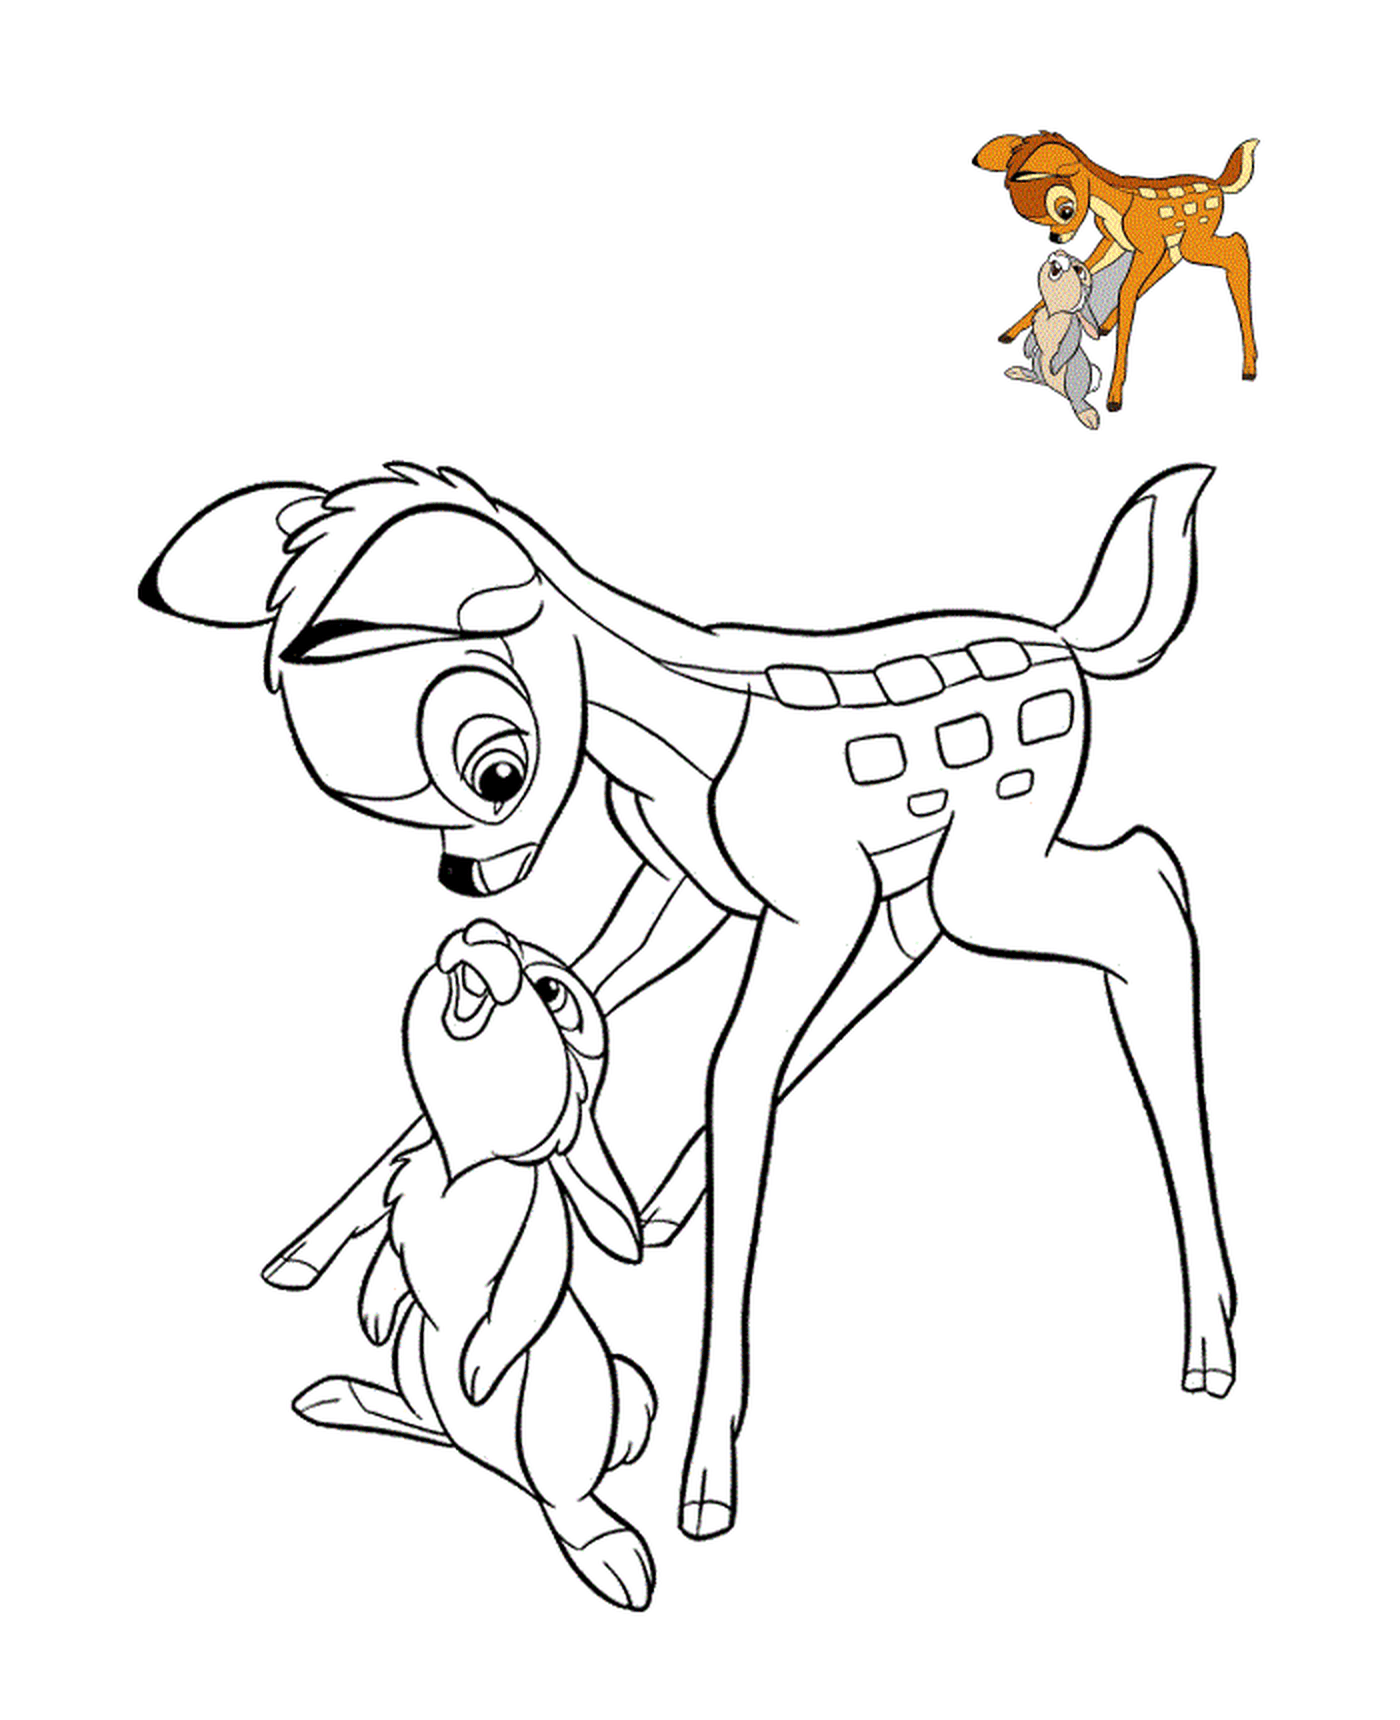  bambi e panpan 